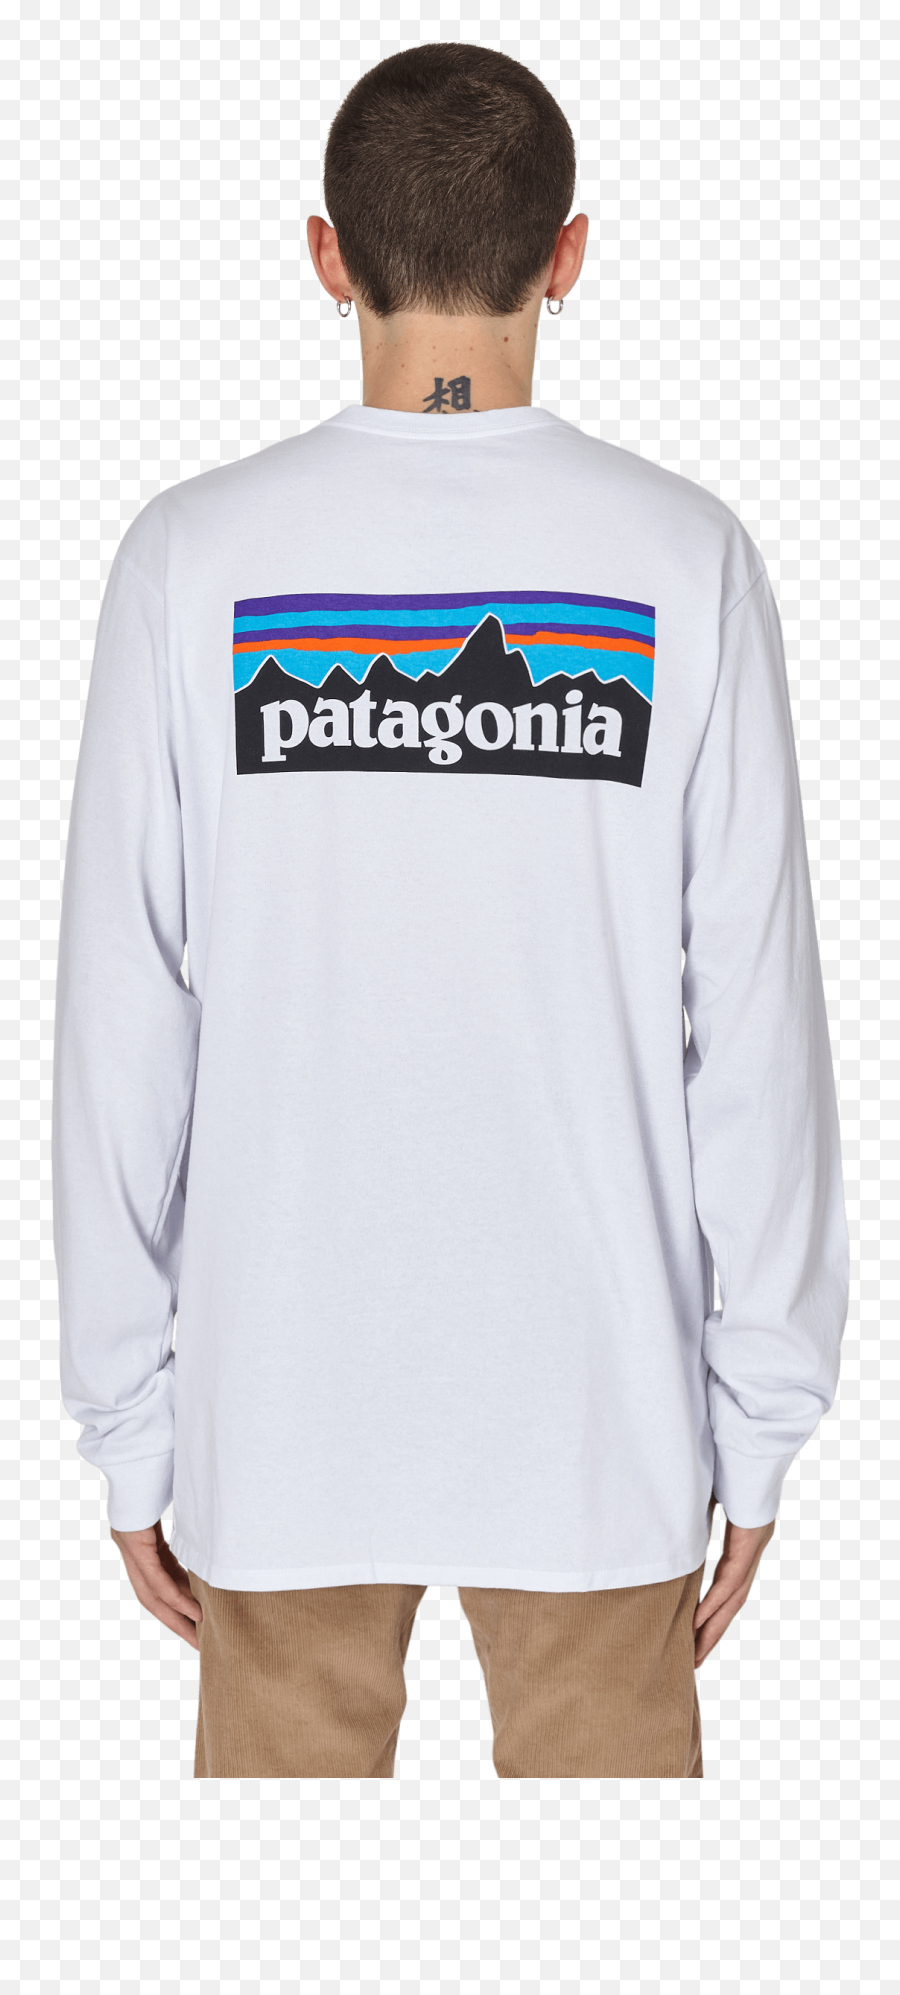 Patagonia P Emoji,Patagonia Logo Shirts